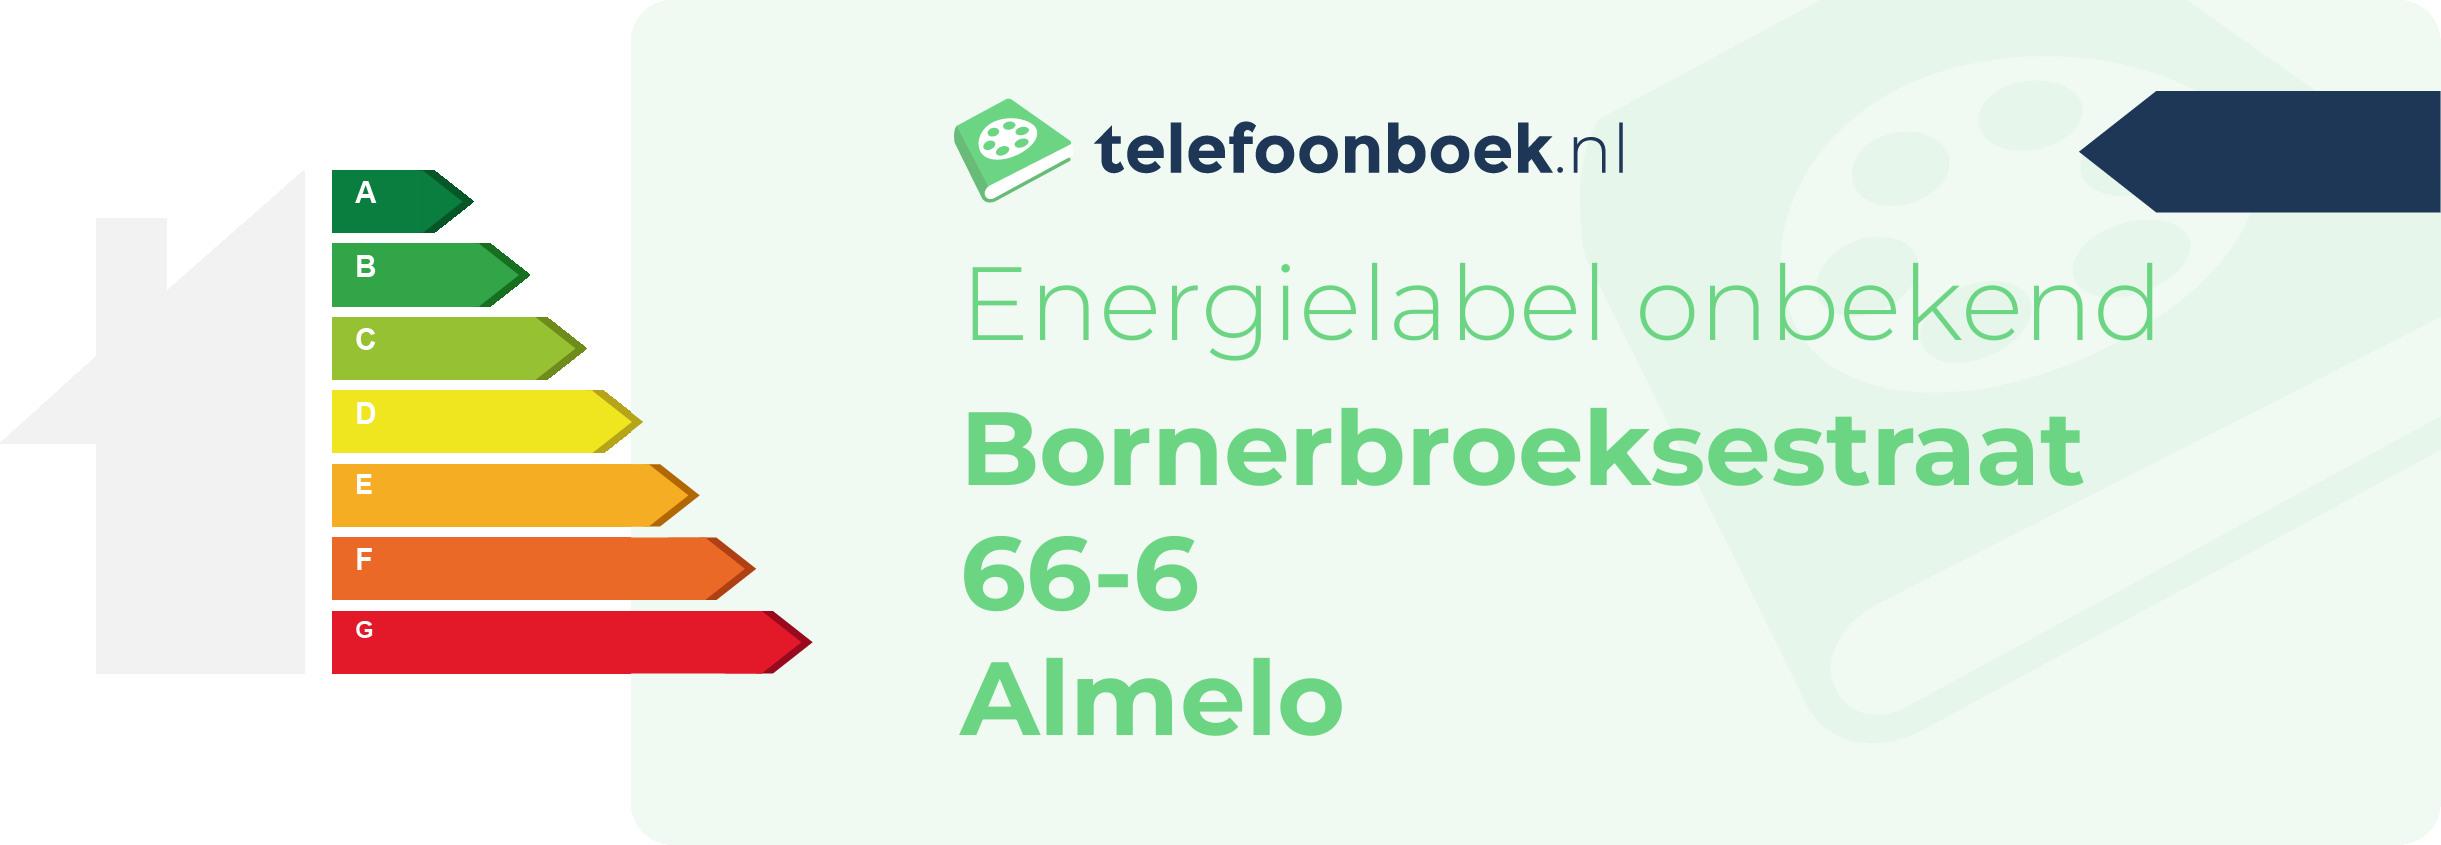 Energielabel Bornerbroeksestraat 66-6 Almelo